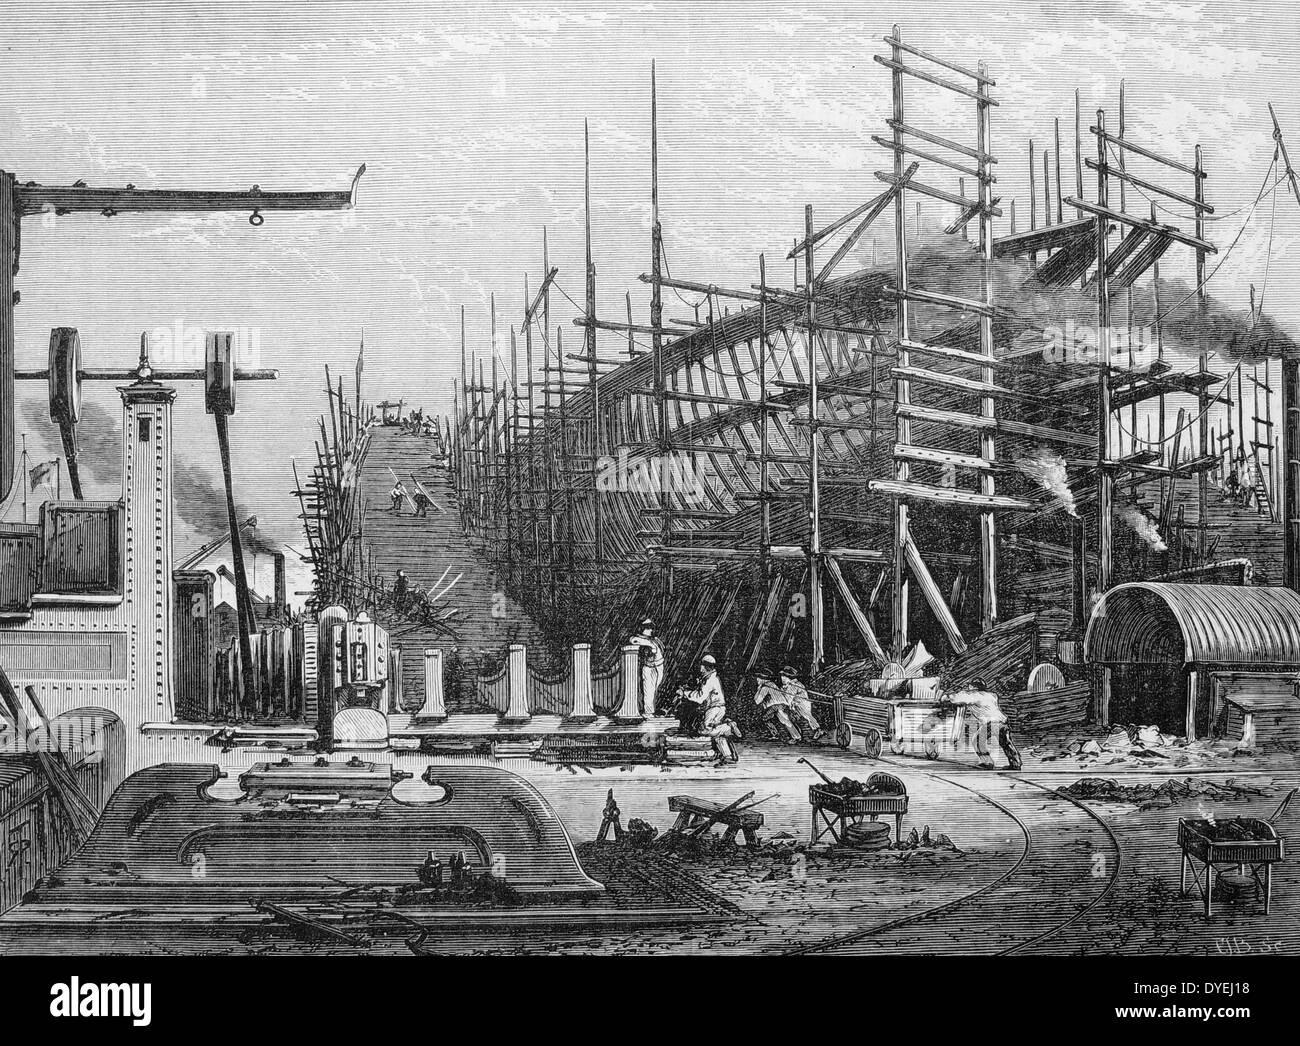 Il telaio di una nave di ferro sulle scorte al Samuda del cantiere navale, cubito di città, Isle of Dogs, Londra. Incisione, London, 1880 Foto Stock